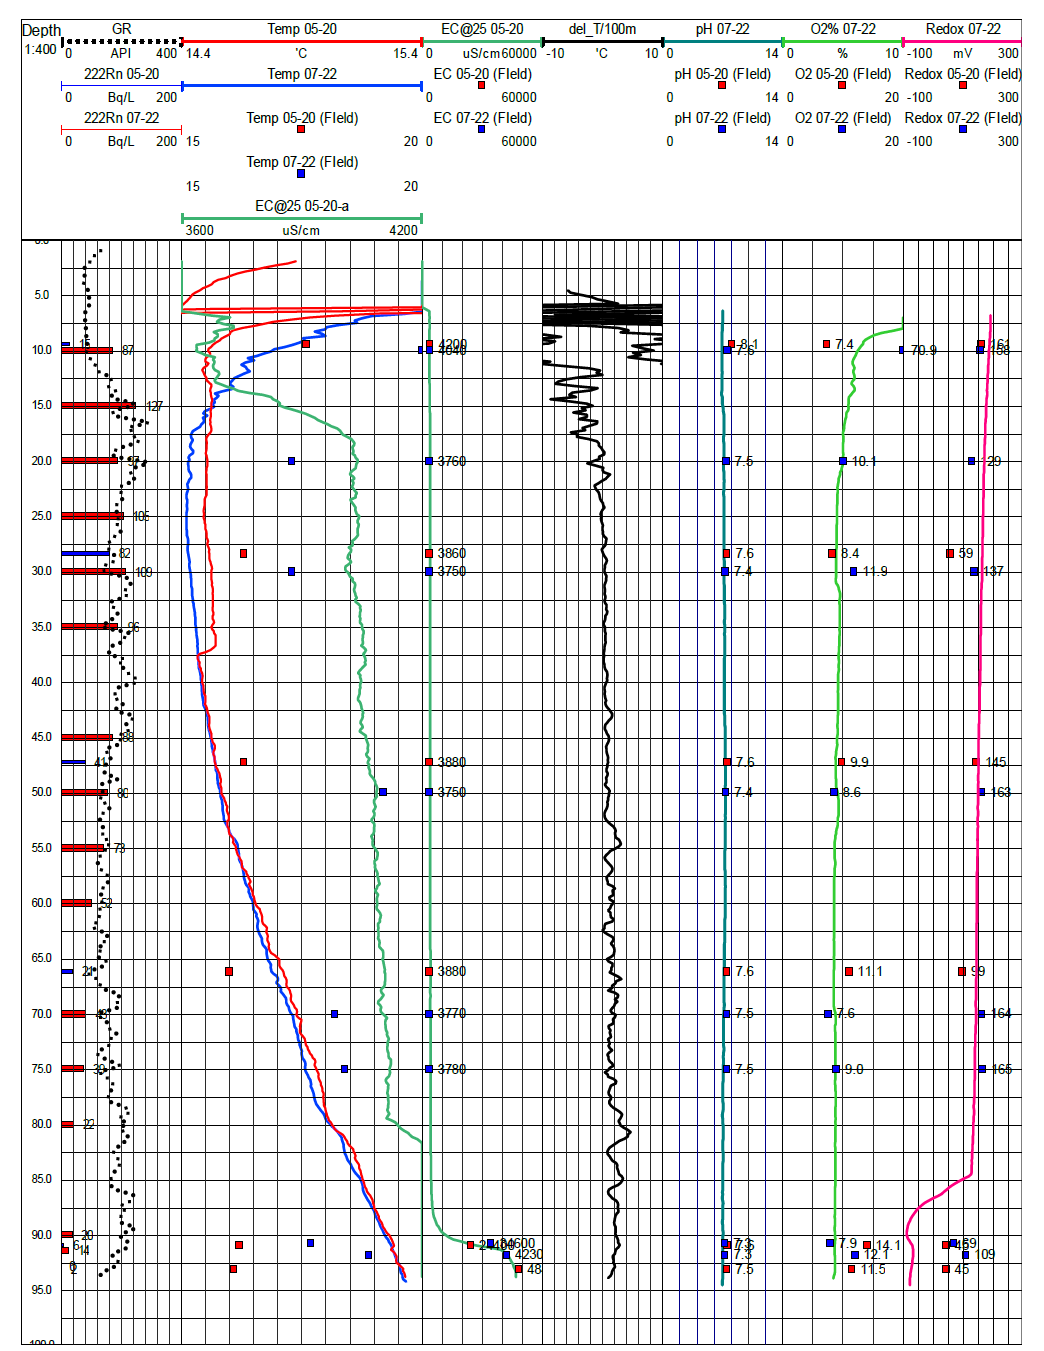 관측정 SCO-1호공에 대한 자연감마선검층, 수질검층 및 라돈 분석 결과